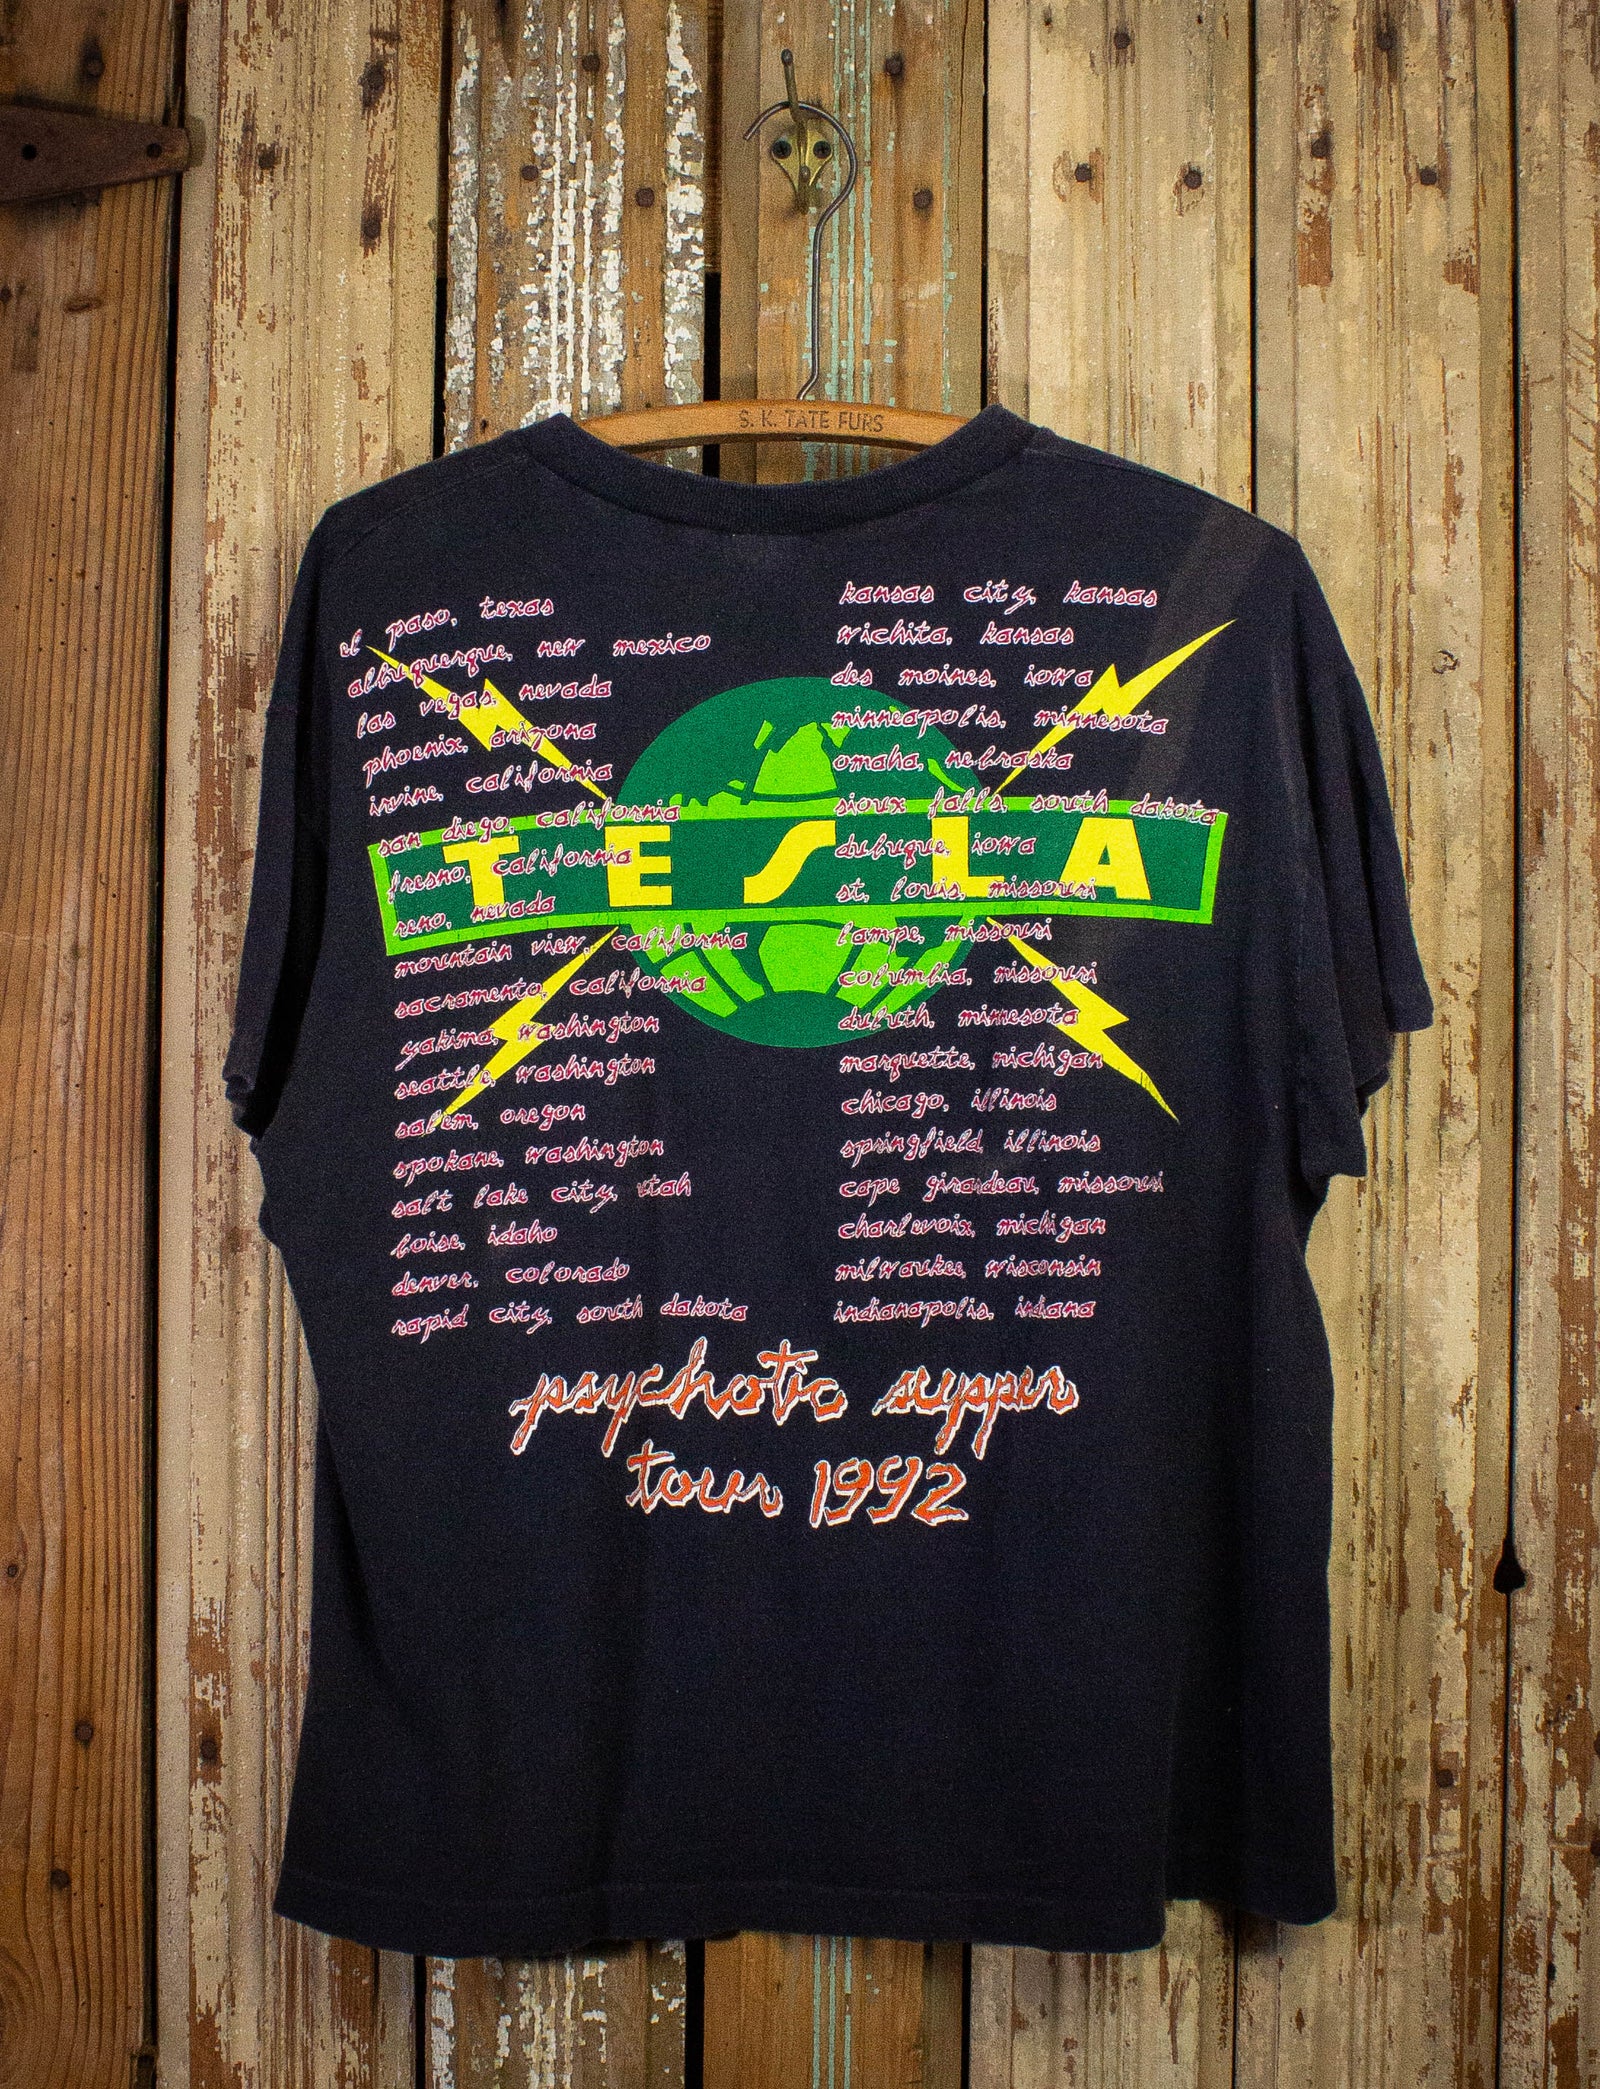 Vintage Tesla Psychotic Supper Tour Concert T Shirt 1992 Black Large